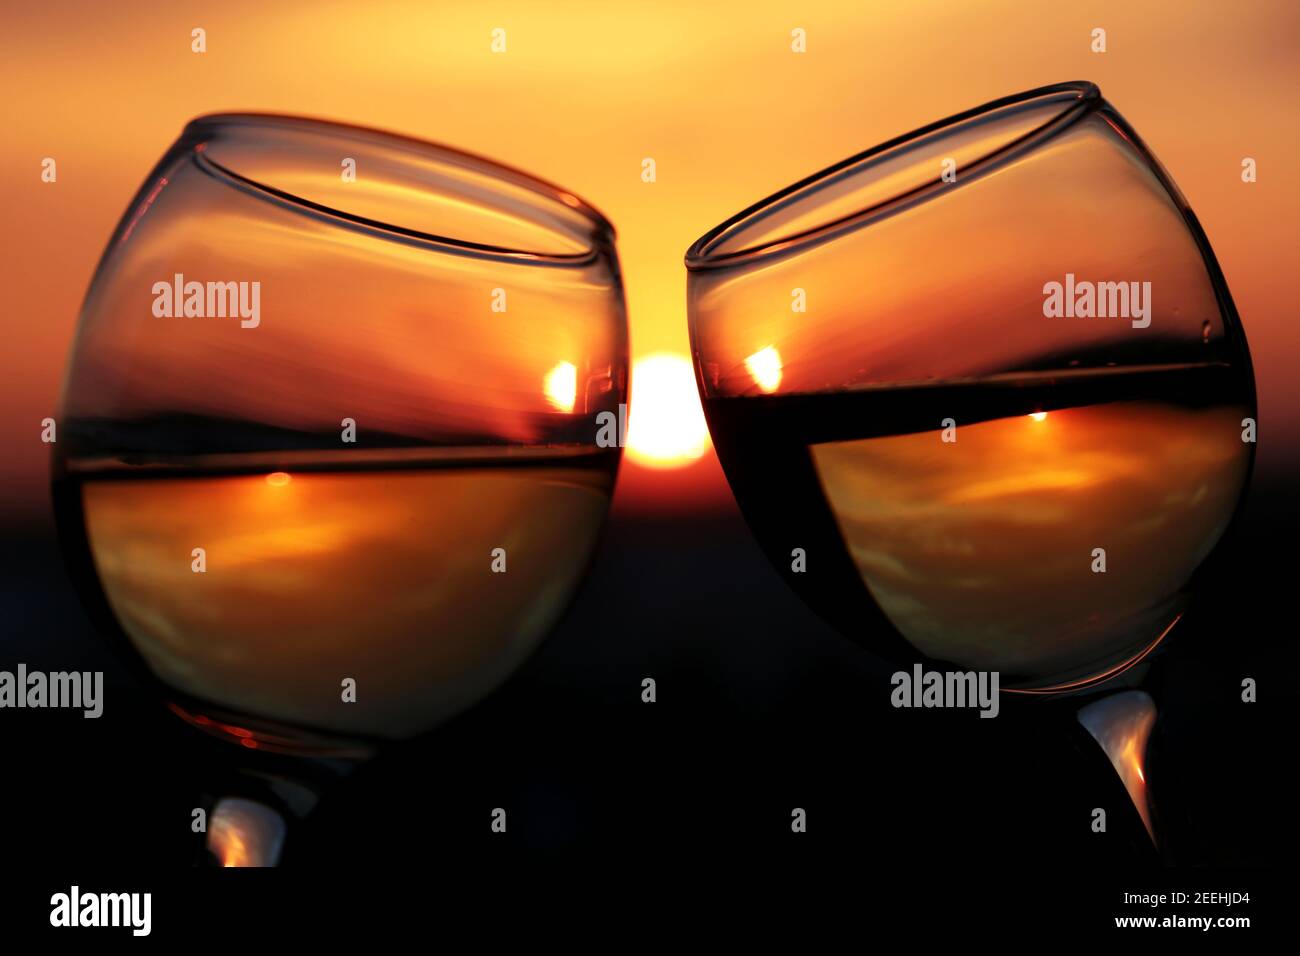 Silhouetten von zwei Gläsern mit Weißwein auf Sonnenuntergang Hintergrund, selektiver Fokus. Paar clink Gläser, Konzept der Feier, romantischen Abend, Liebe Stockfoto